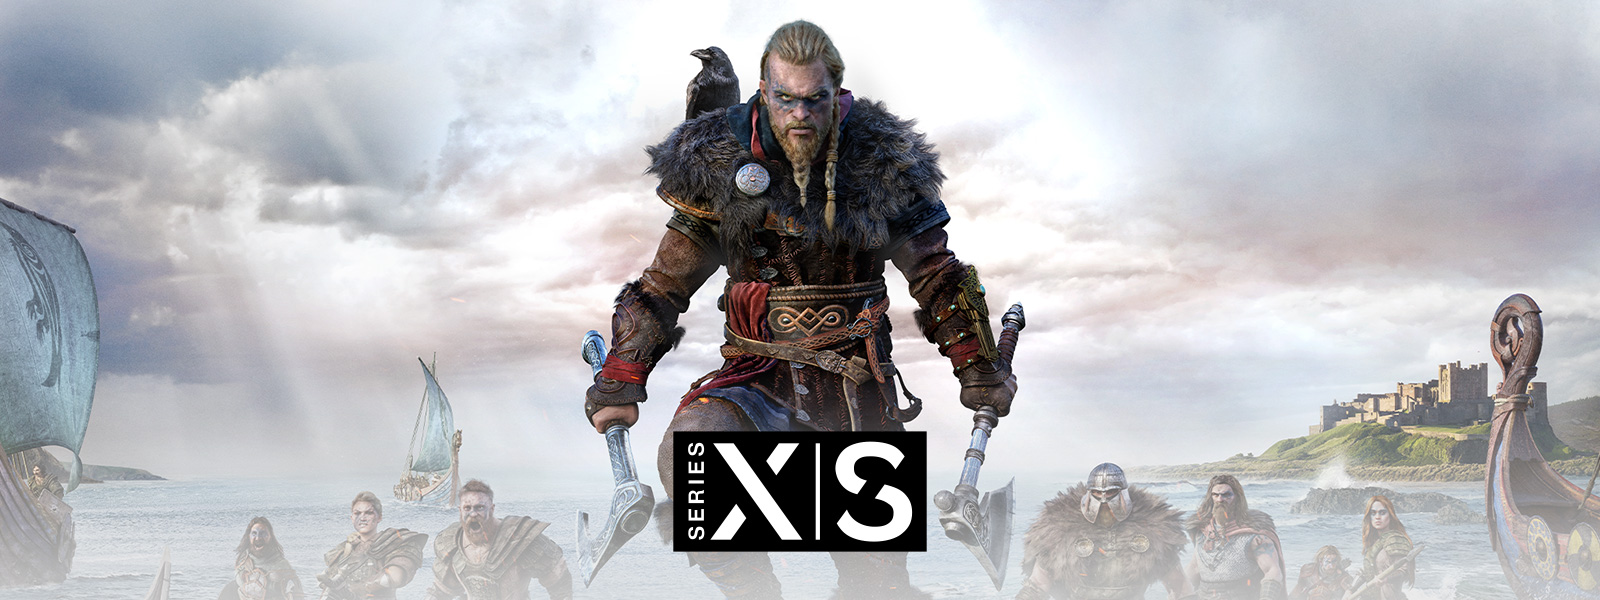 Assassin's Creed Valhalla, Xbox Series X|S. Legendariske Viking Eivor leder hæren sin inn i kamp.